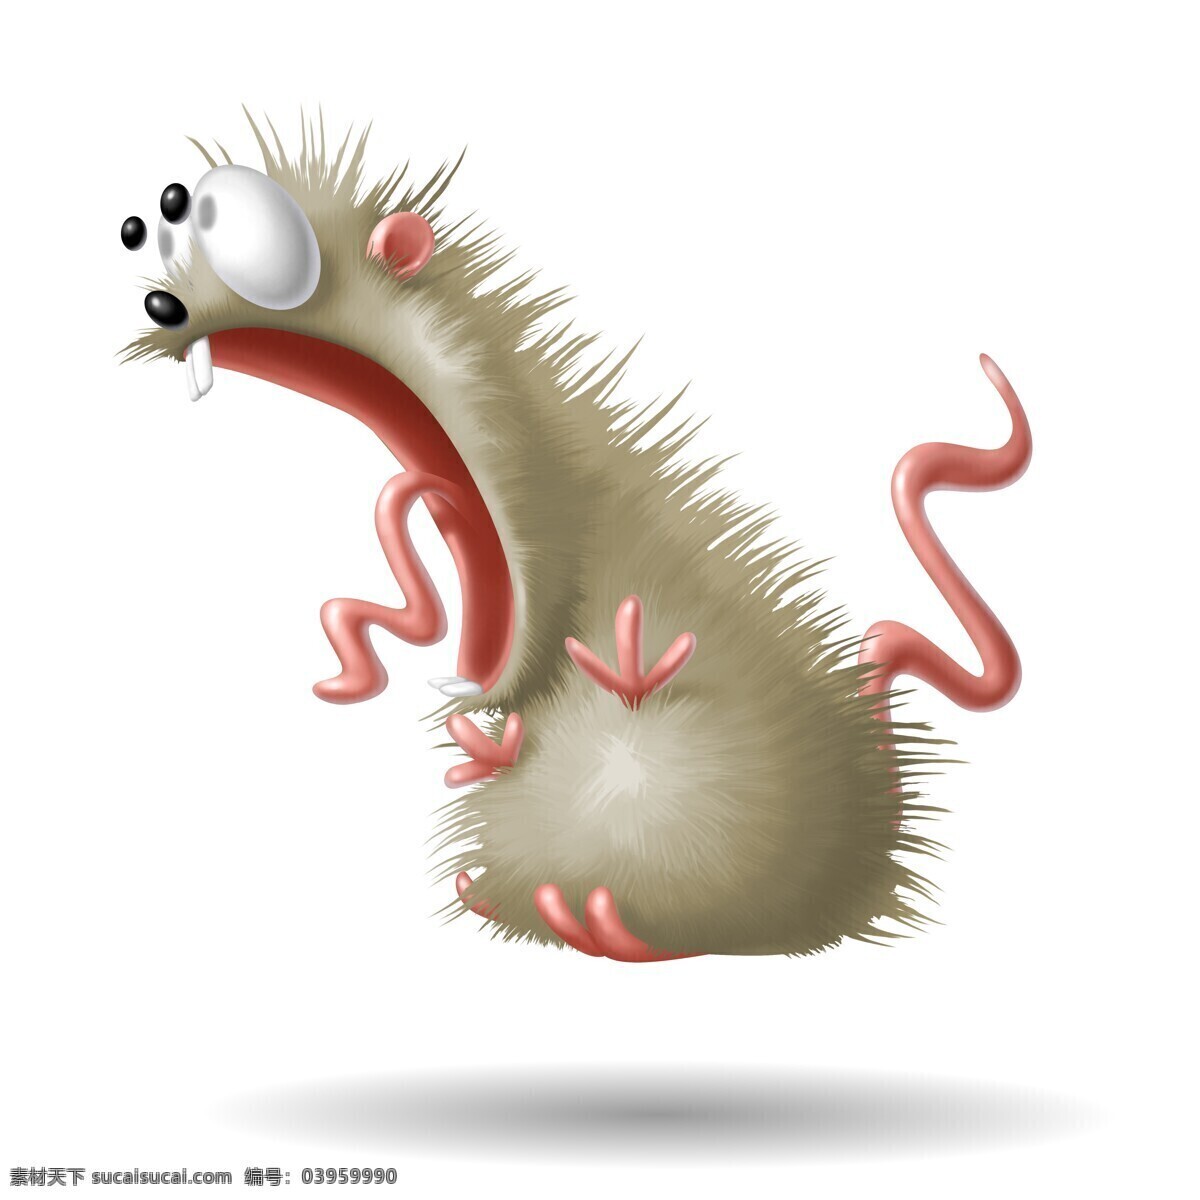 惊讶 表情 的卡 通 老鼠 做 动物 3d卡通动物 陆地动物 生物世界 3d老鼠 卡通动物